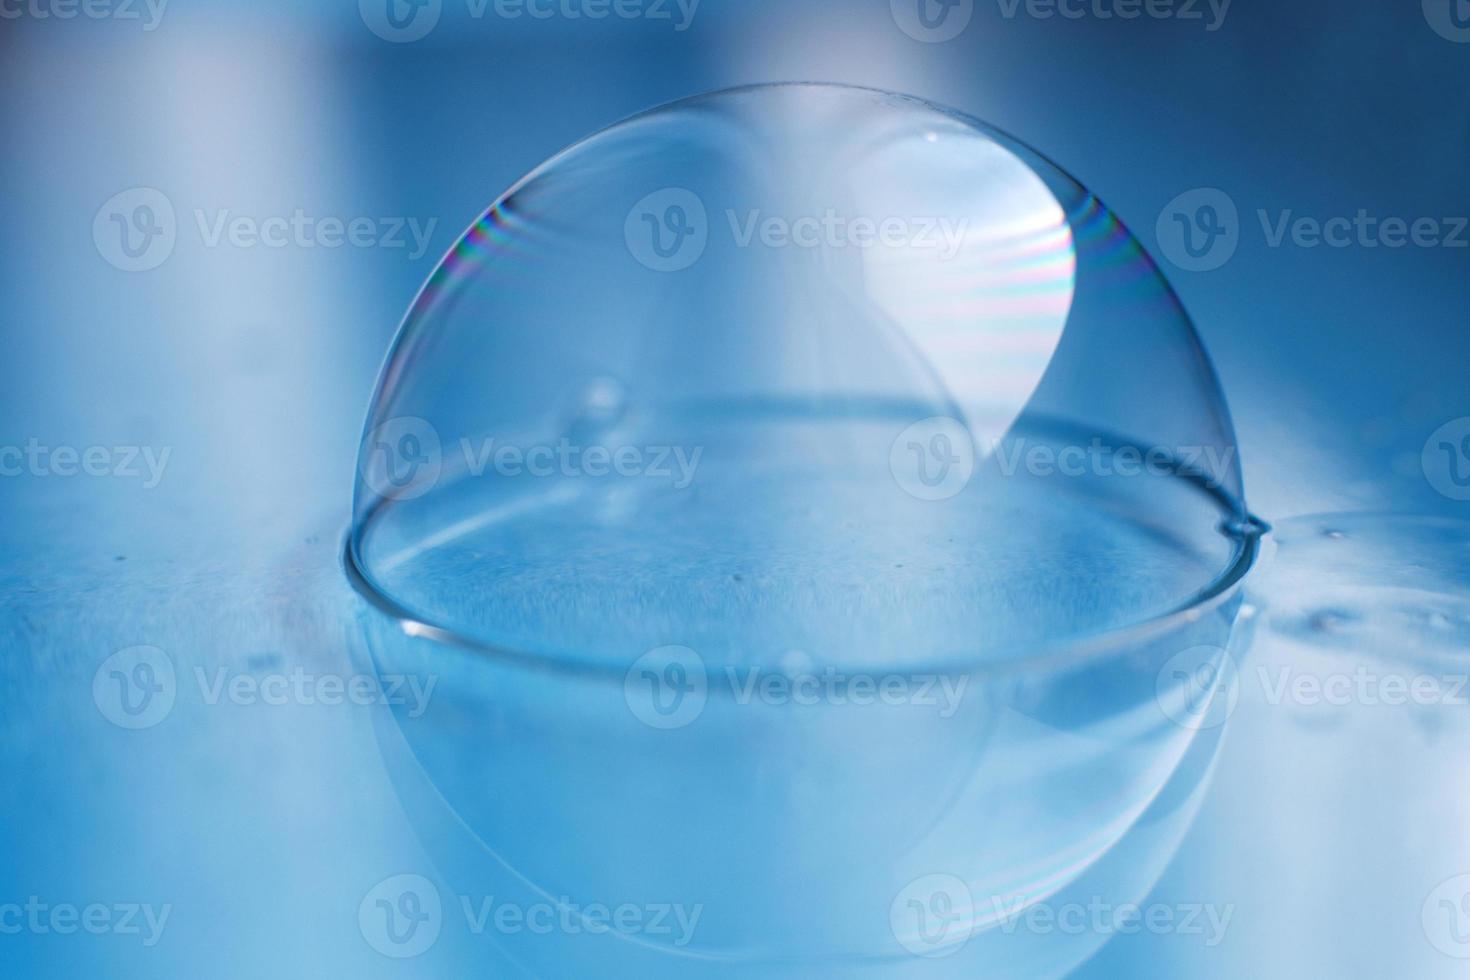 zeep bubbel dichtbij omhoog. abstract blauw water achtergrond foto